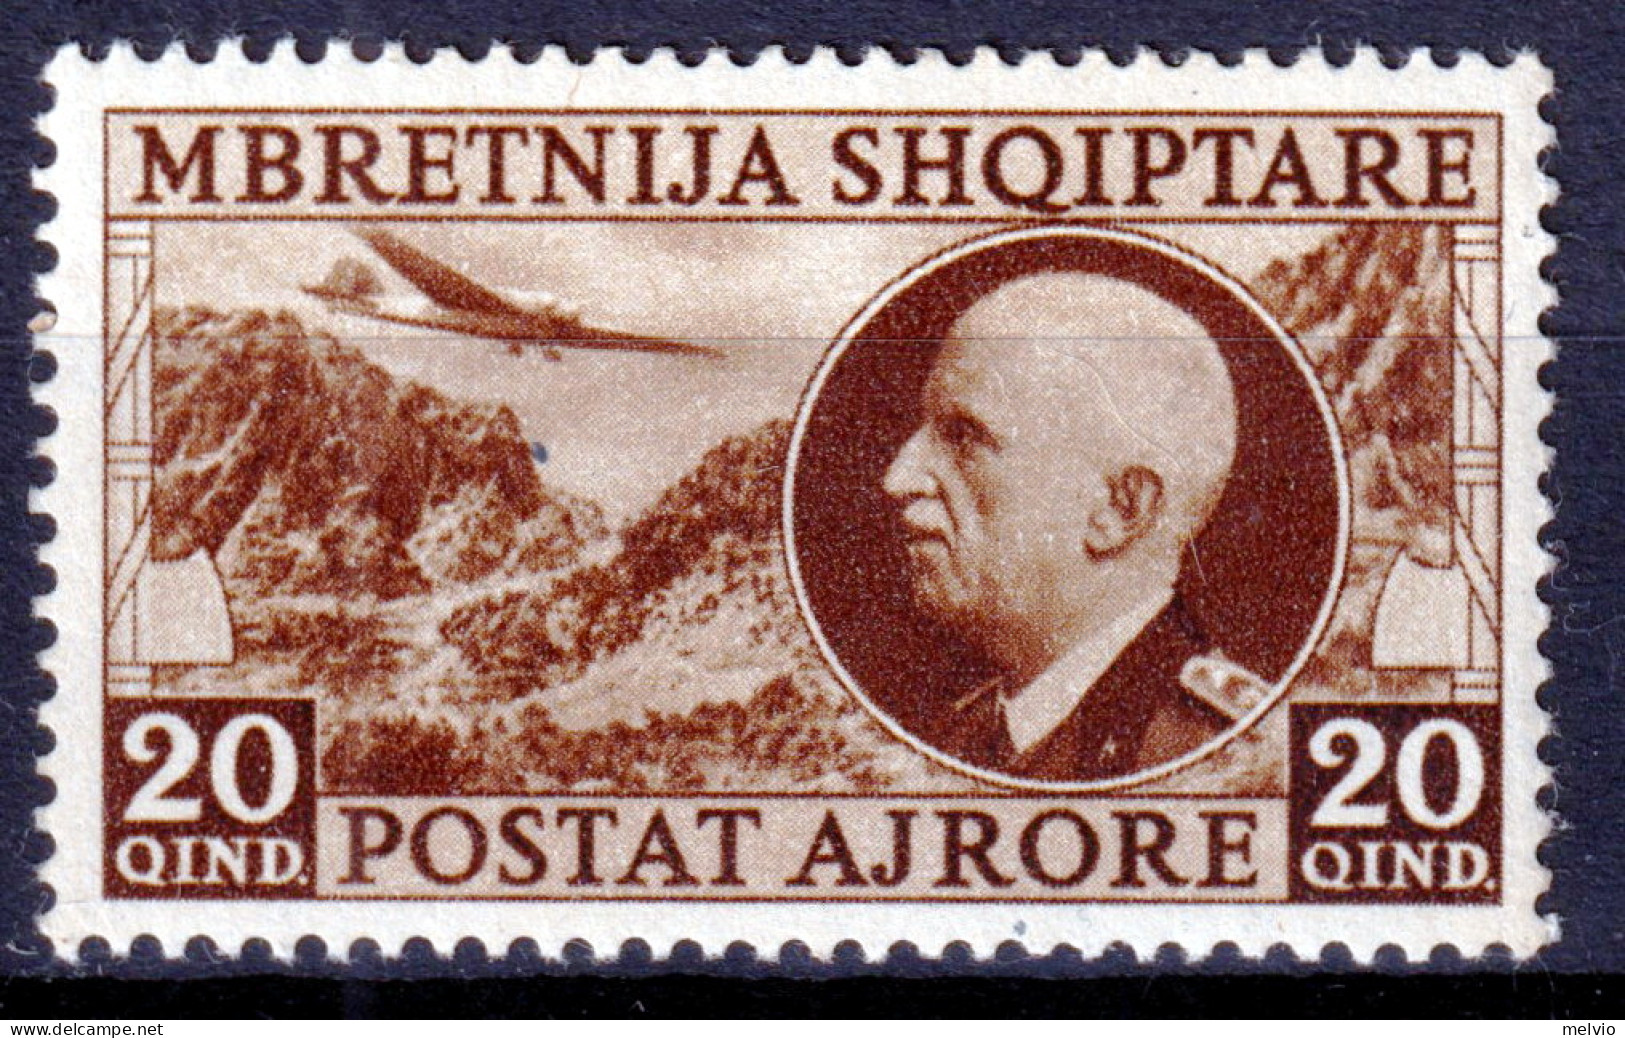 1939 (MNH=**) ALBANIA Occupazione Italiana PA Lire 20 Nuovo Gomma Originale Ed I - Albania